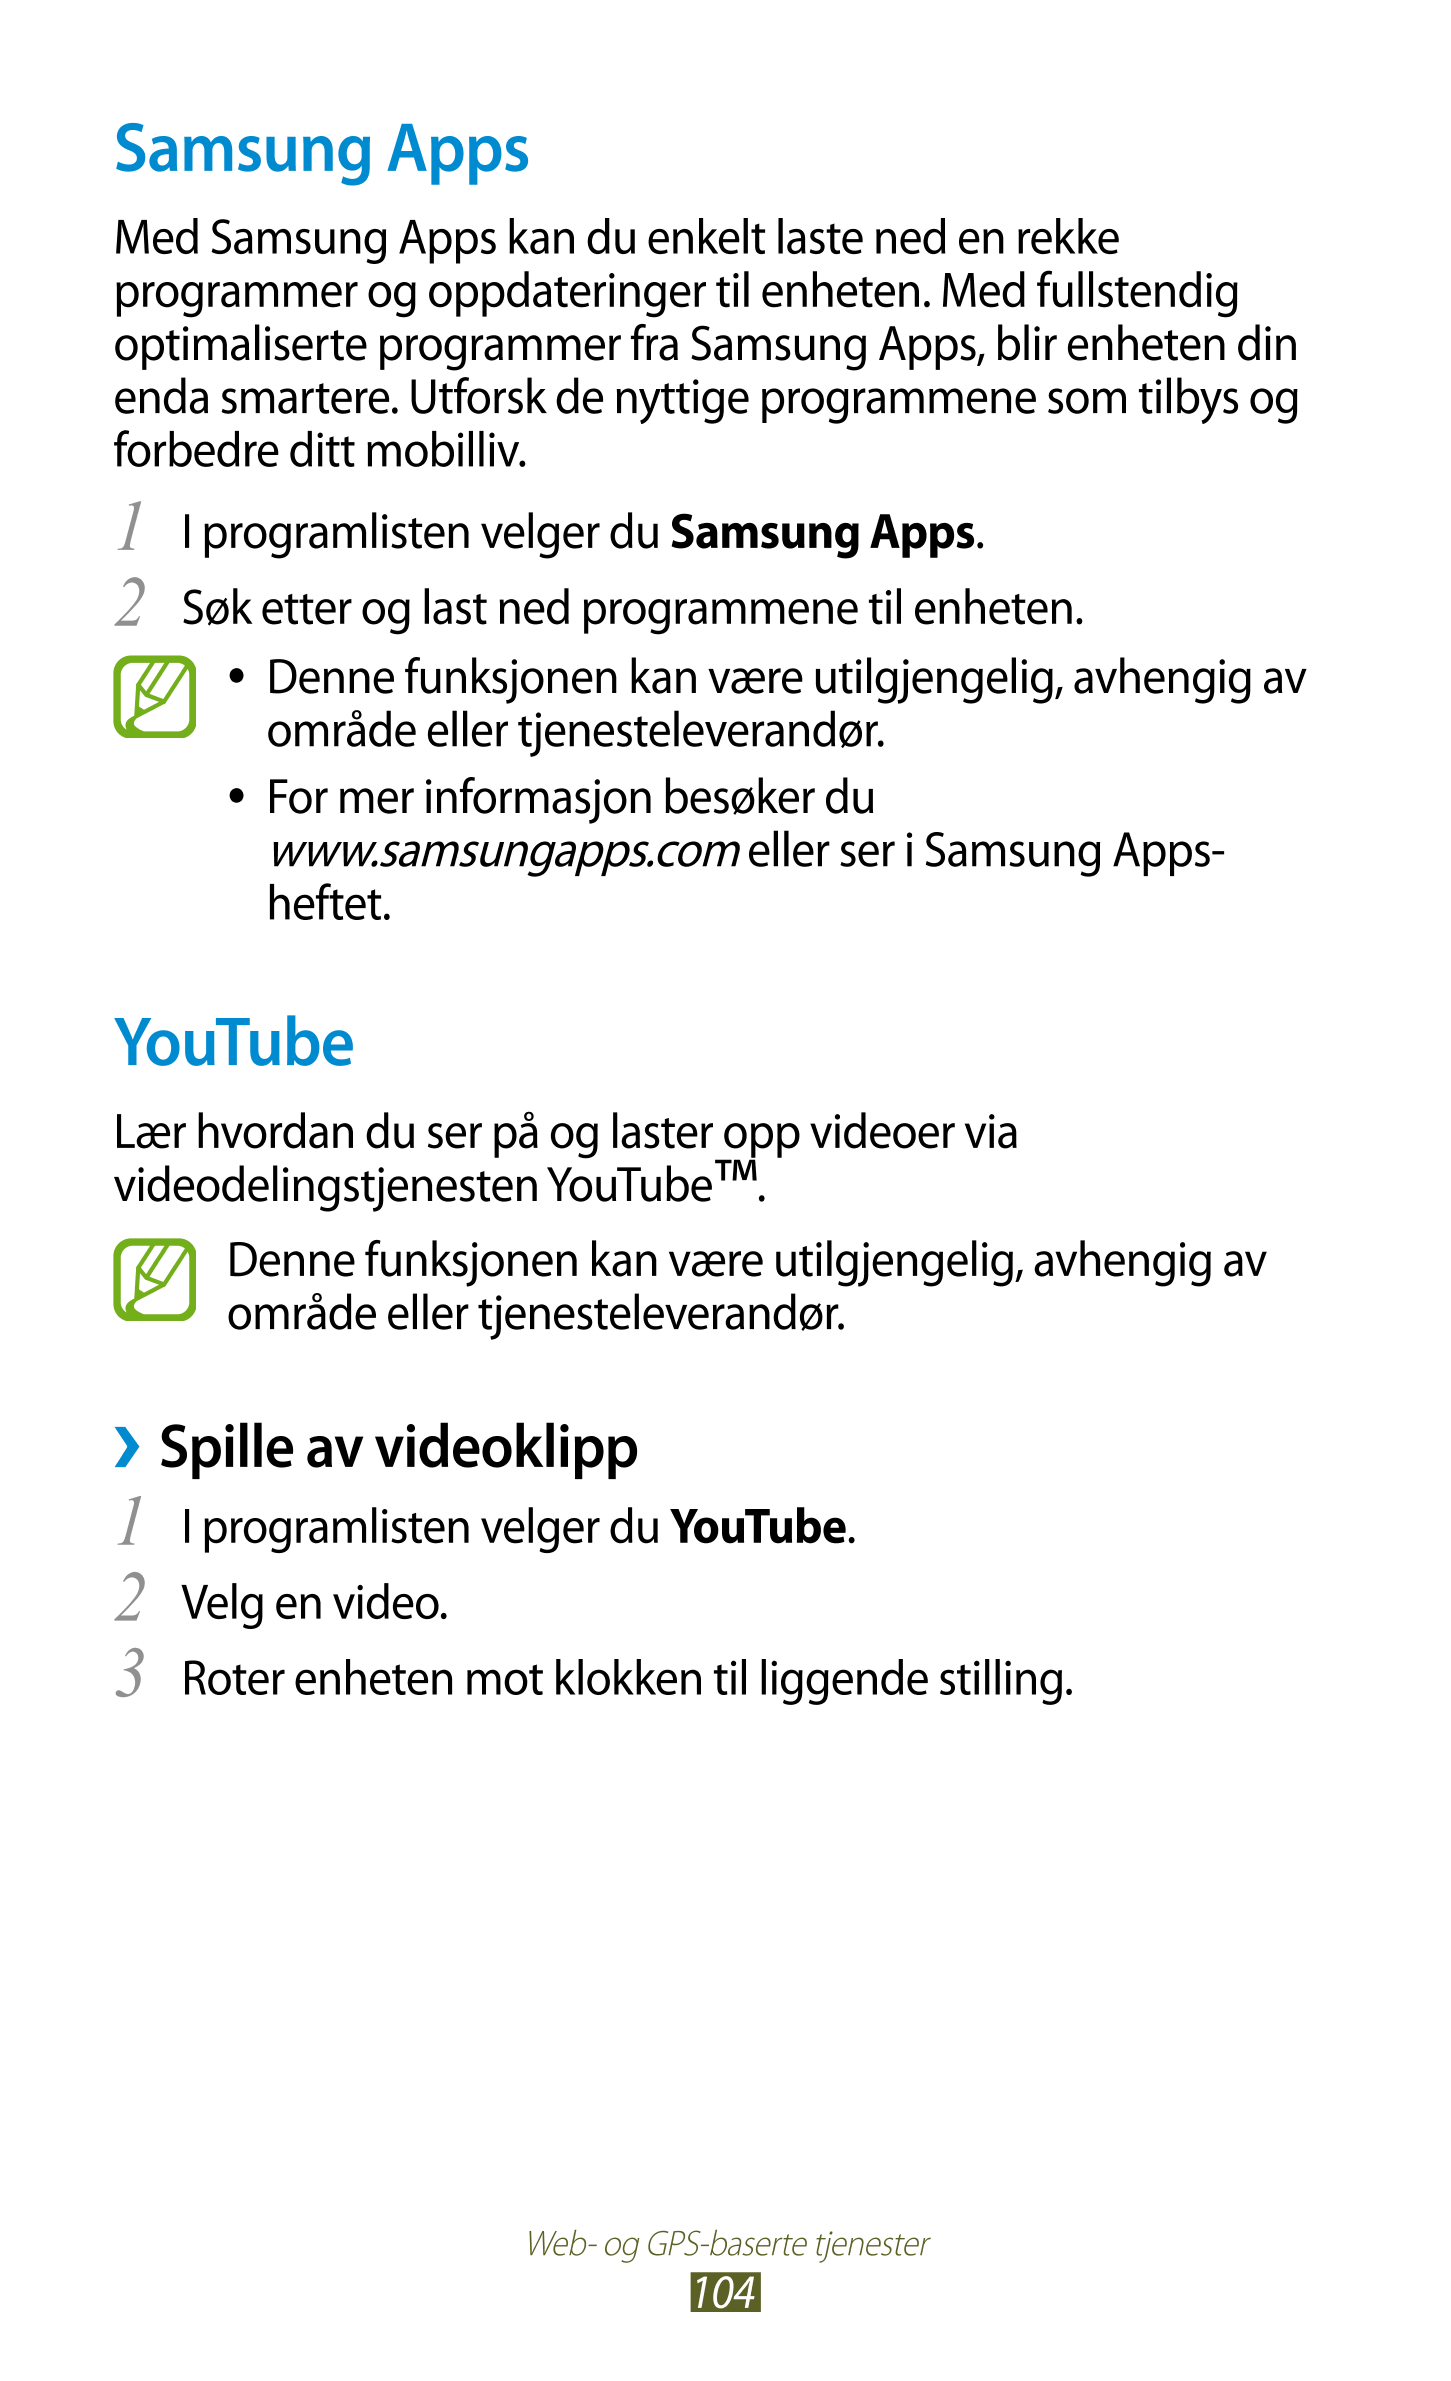 Samsung Apps
Med Samsung Apps kan du enkelt laste ned en rekke 
programmer og oppdateringer til enheten. Med fullstendig 
optima